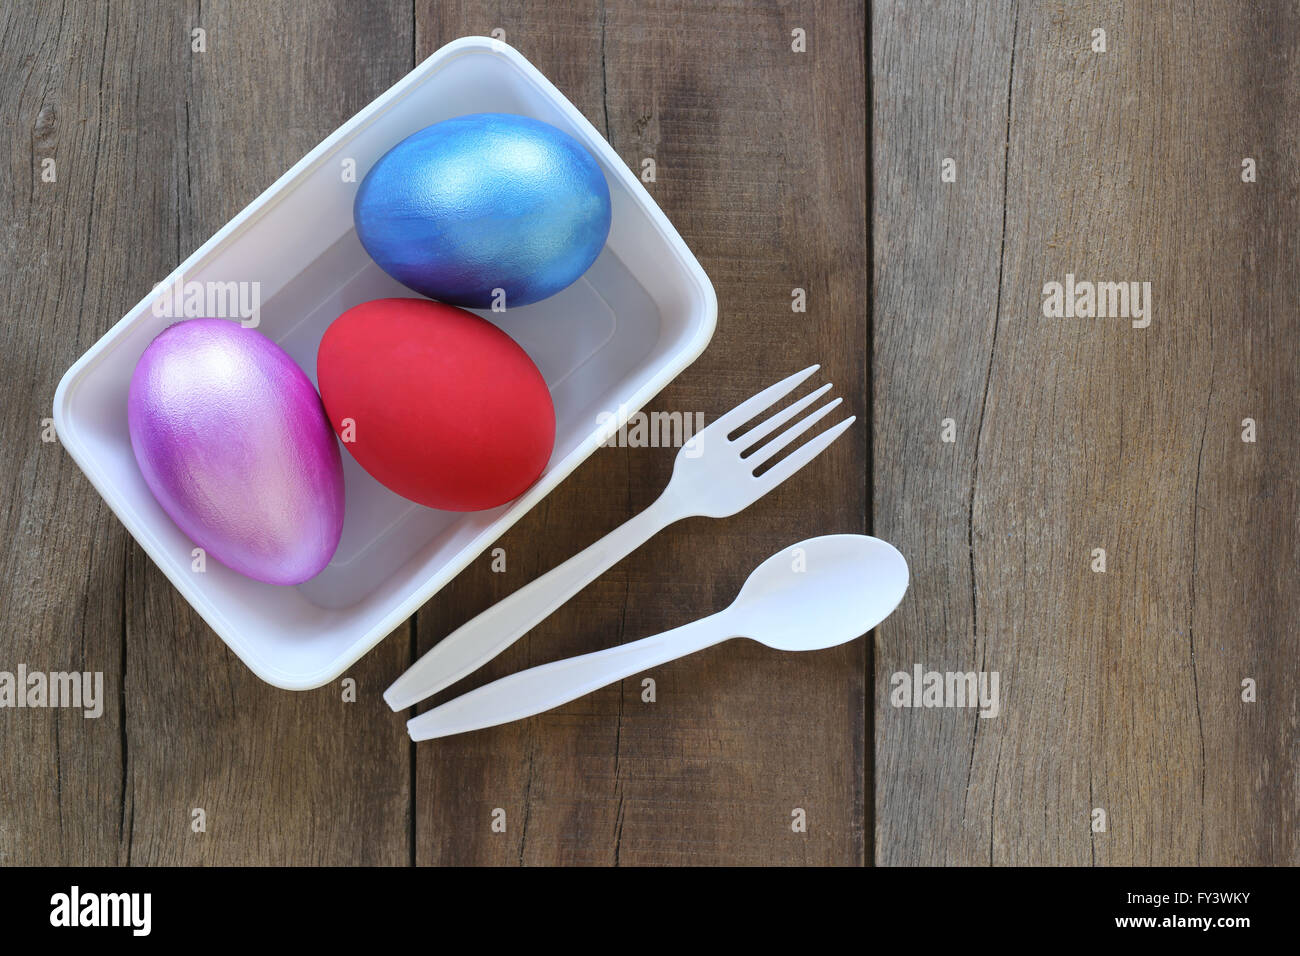 Huevo de pascua una variedad de colores en el recipiente de plástico y una cuchara, tenedor sobre fondo de madera vieja. Foto de stock